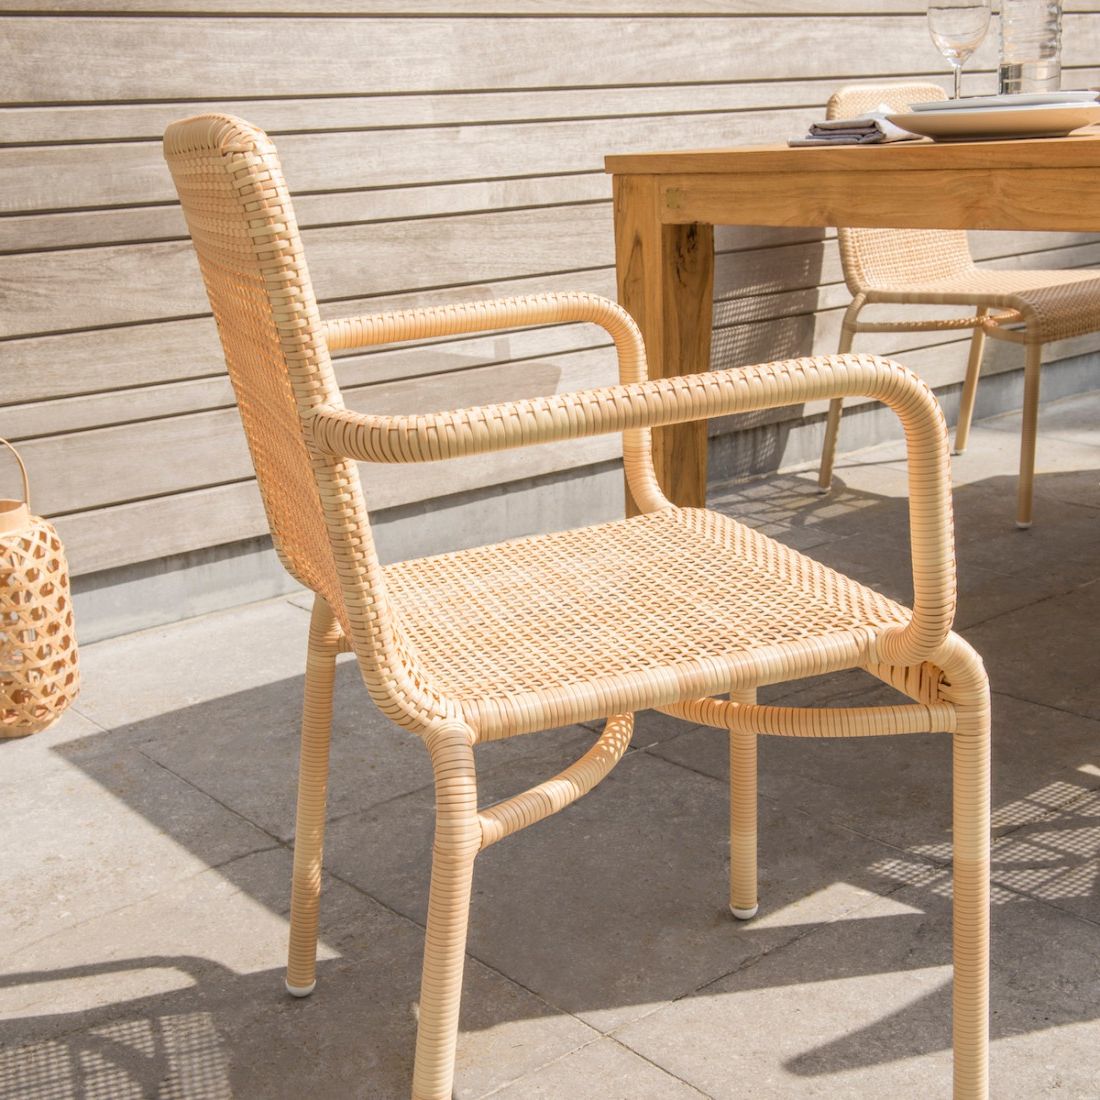 Table de jardin en teck avec chaises et fauteuils